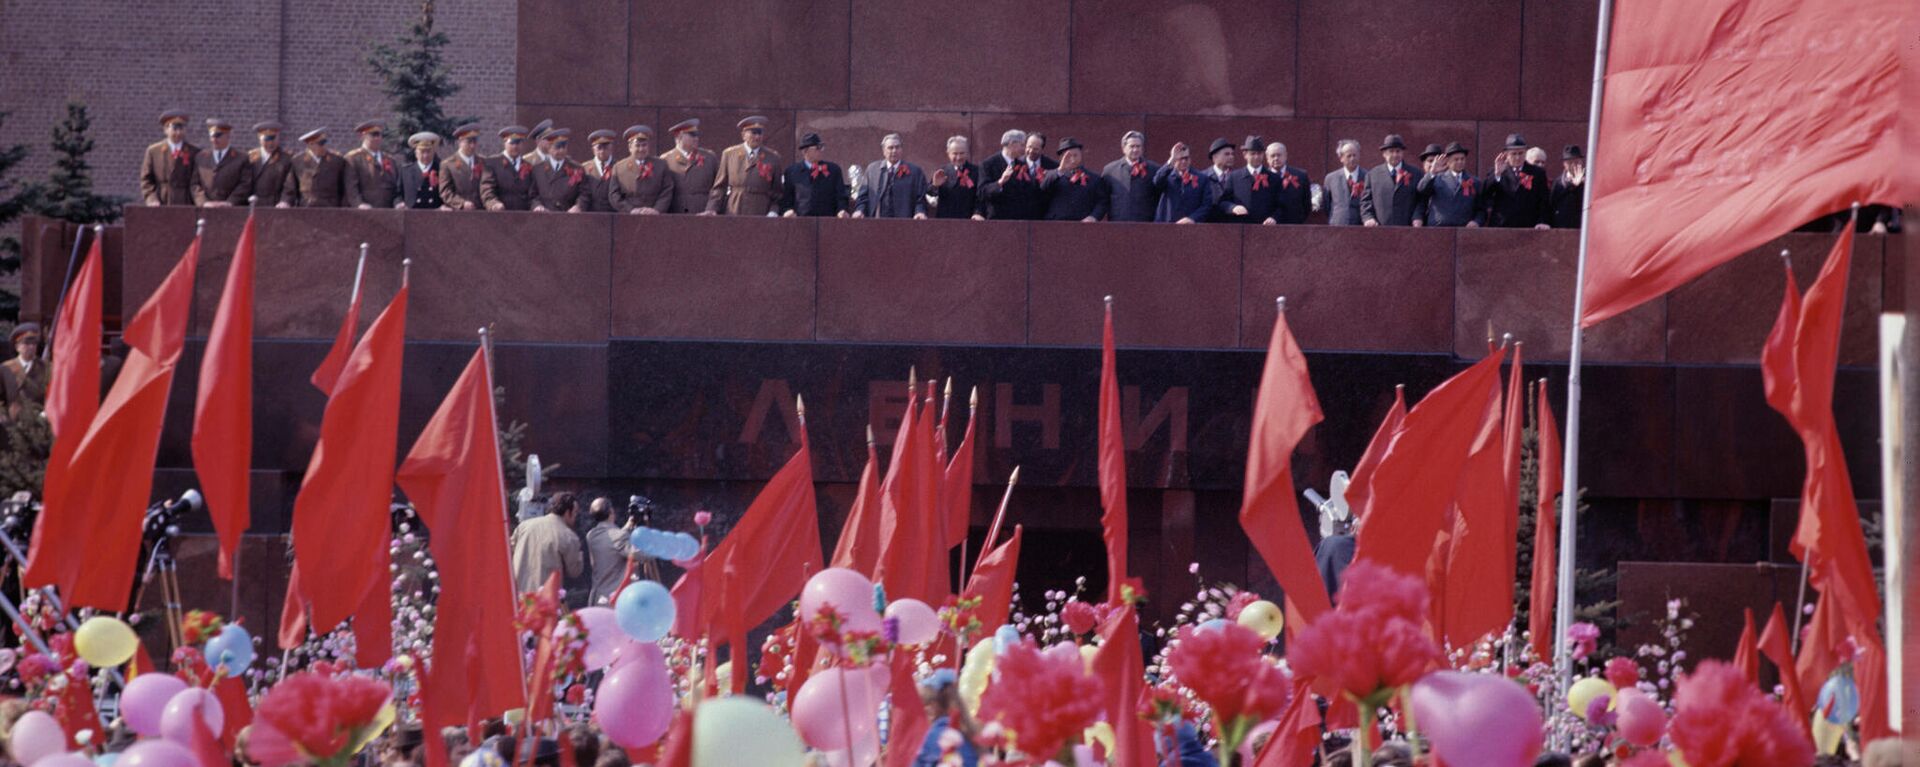 Праздничная демонстрация на Красной площади в День международной солидарности трудящихся.  - Sputnik Узбекистан, 1920, 23.04.2021